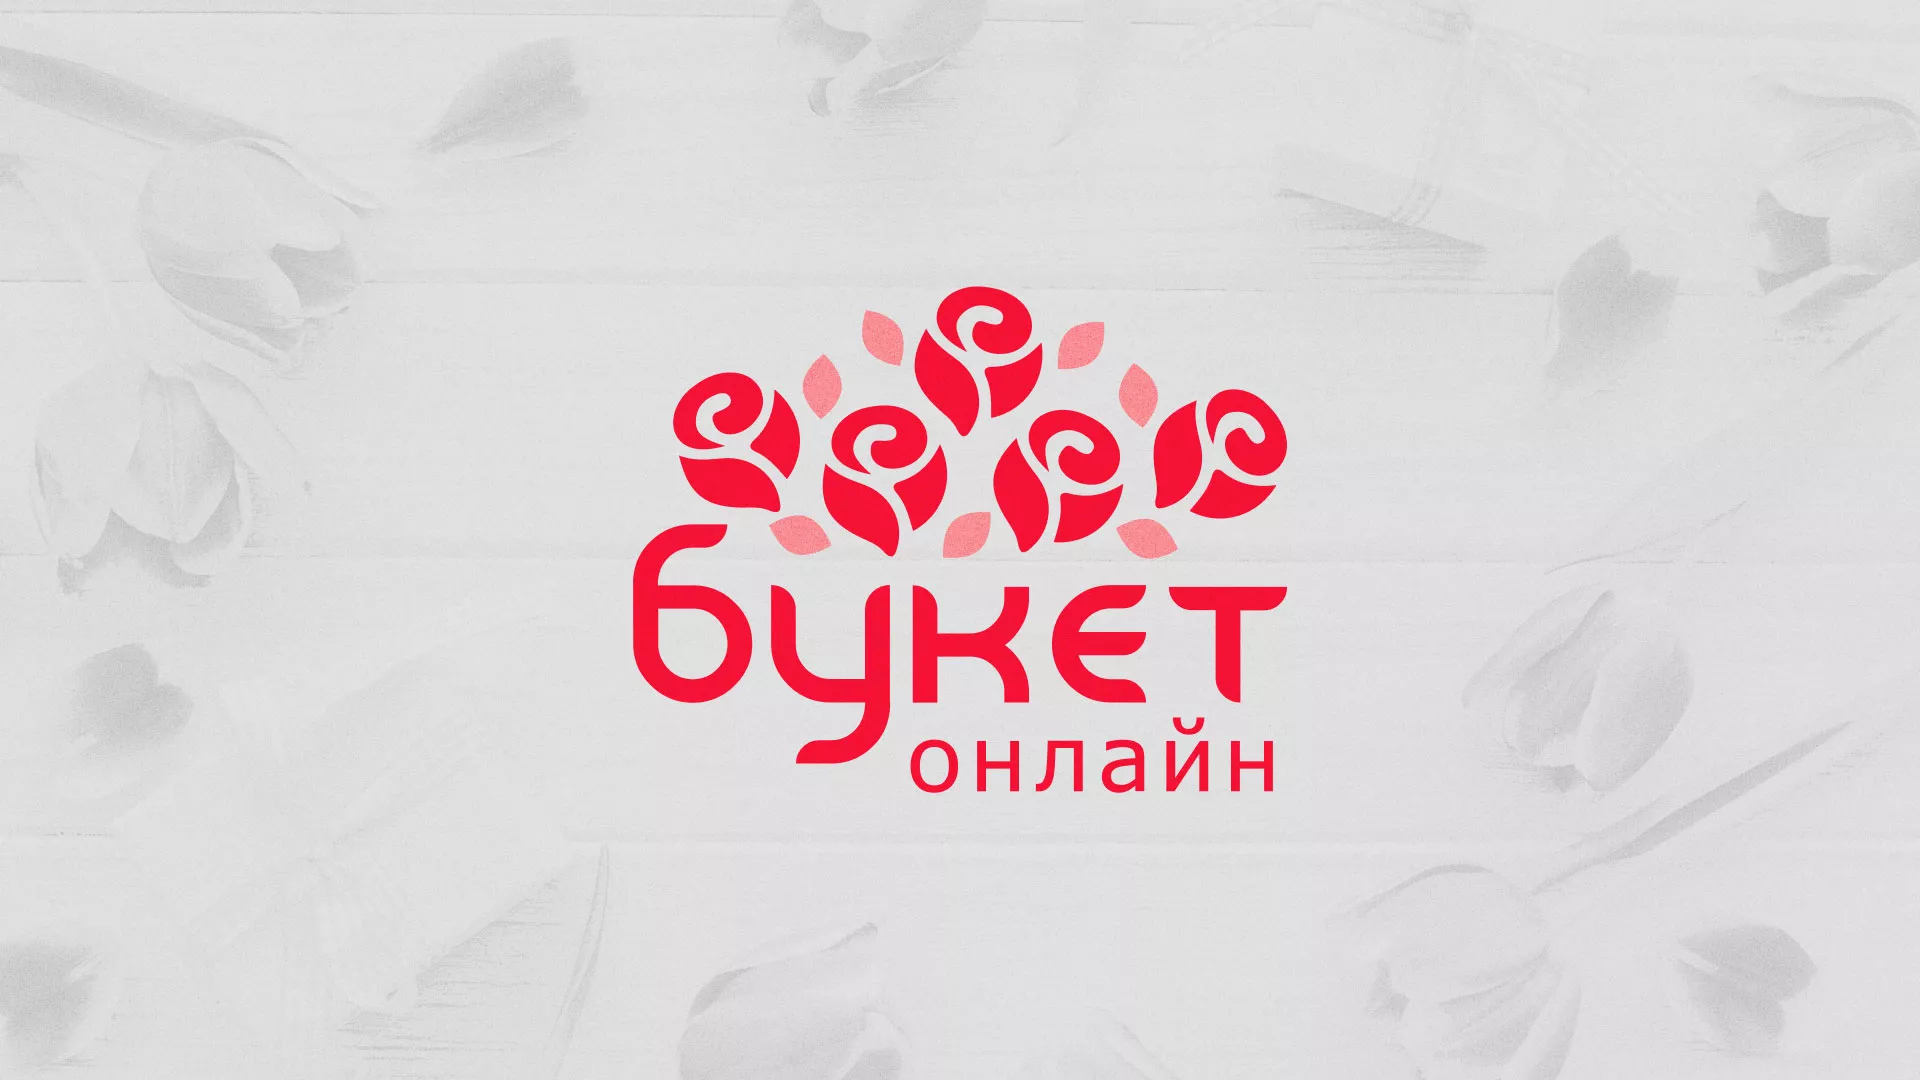 Создание интернет-магазина «Букет-онлайн» по цветам в Льгове